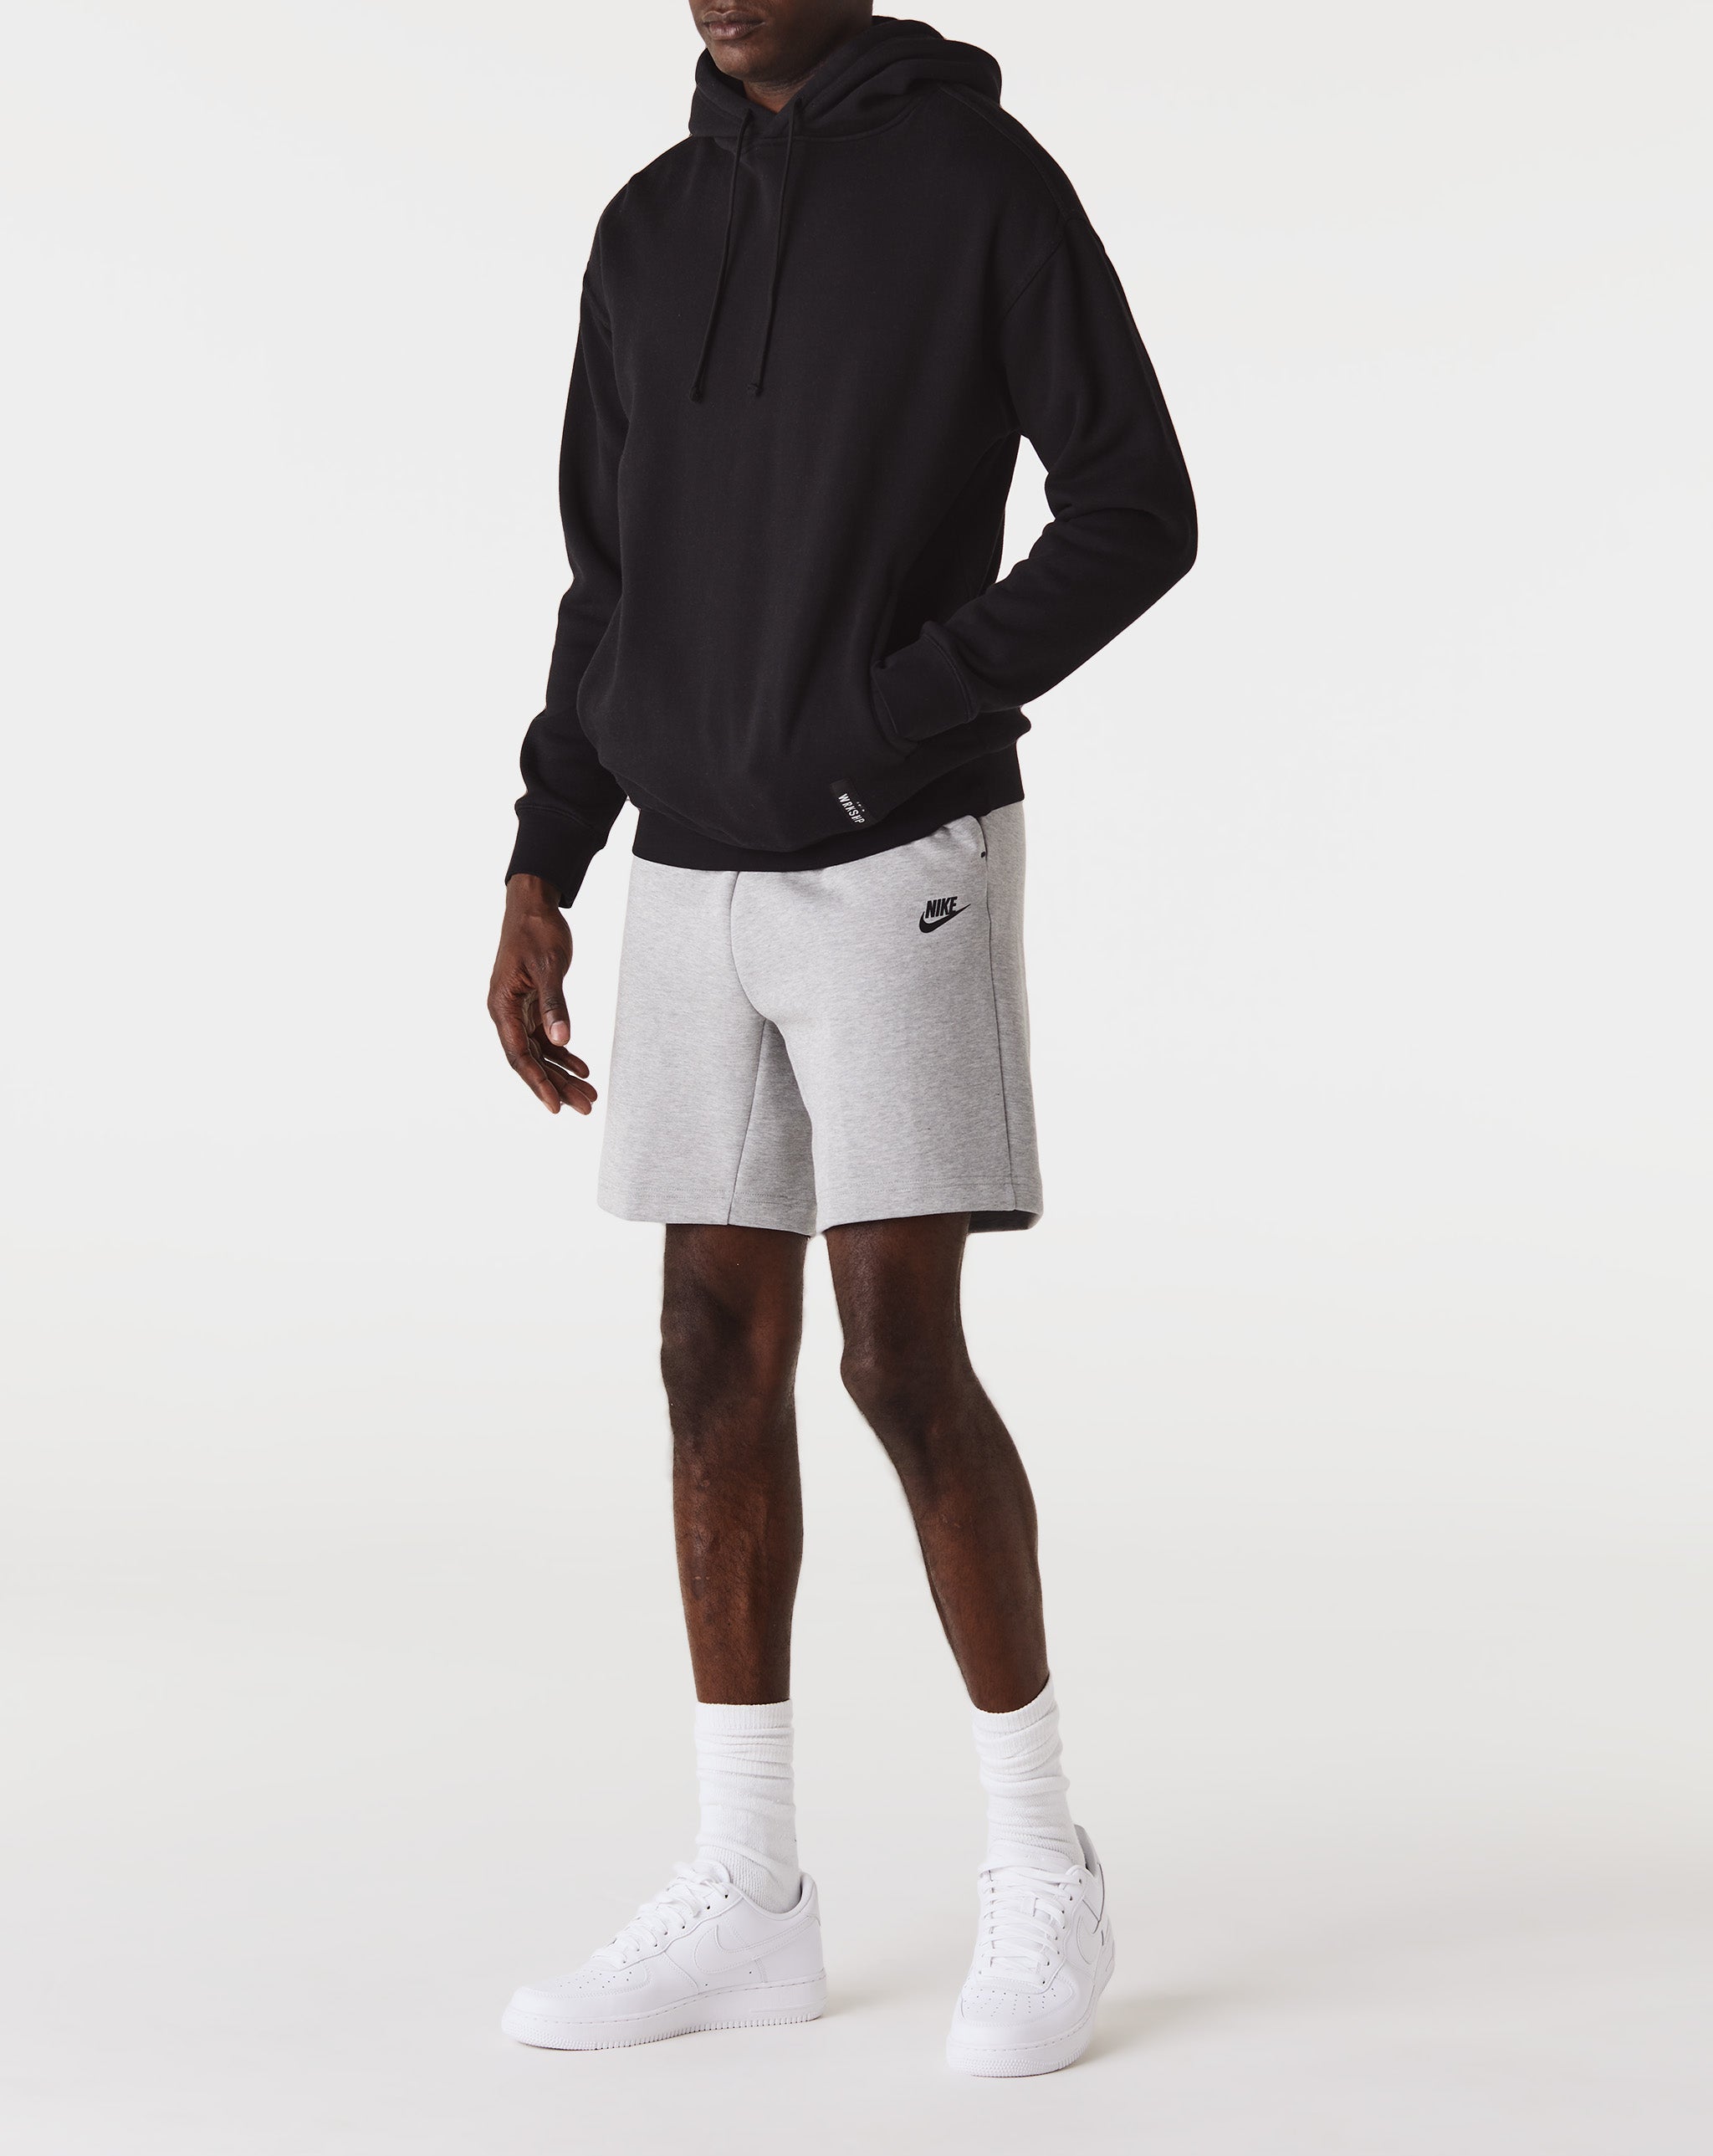 Nike DVF Diane von Furstenberg abstract-floral shirt dress  - Cheap Urlfreeze Jordan outlet